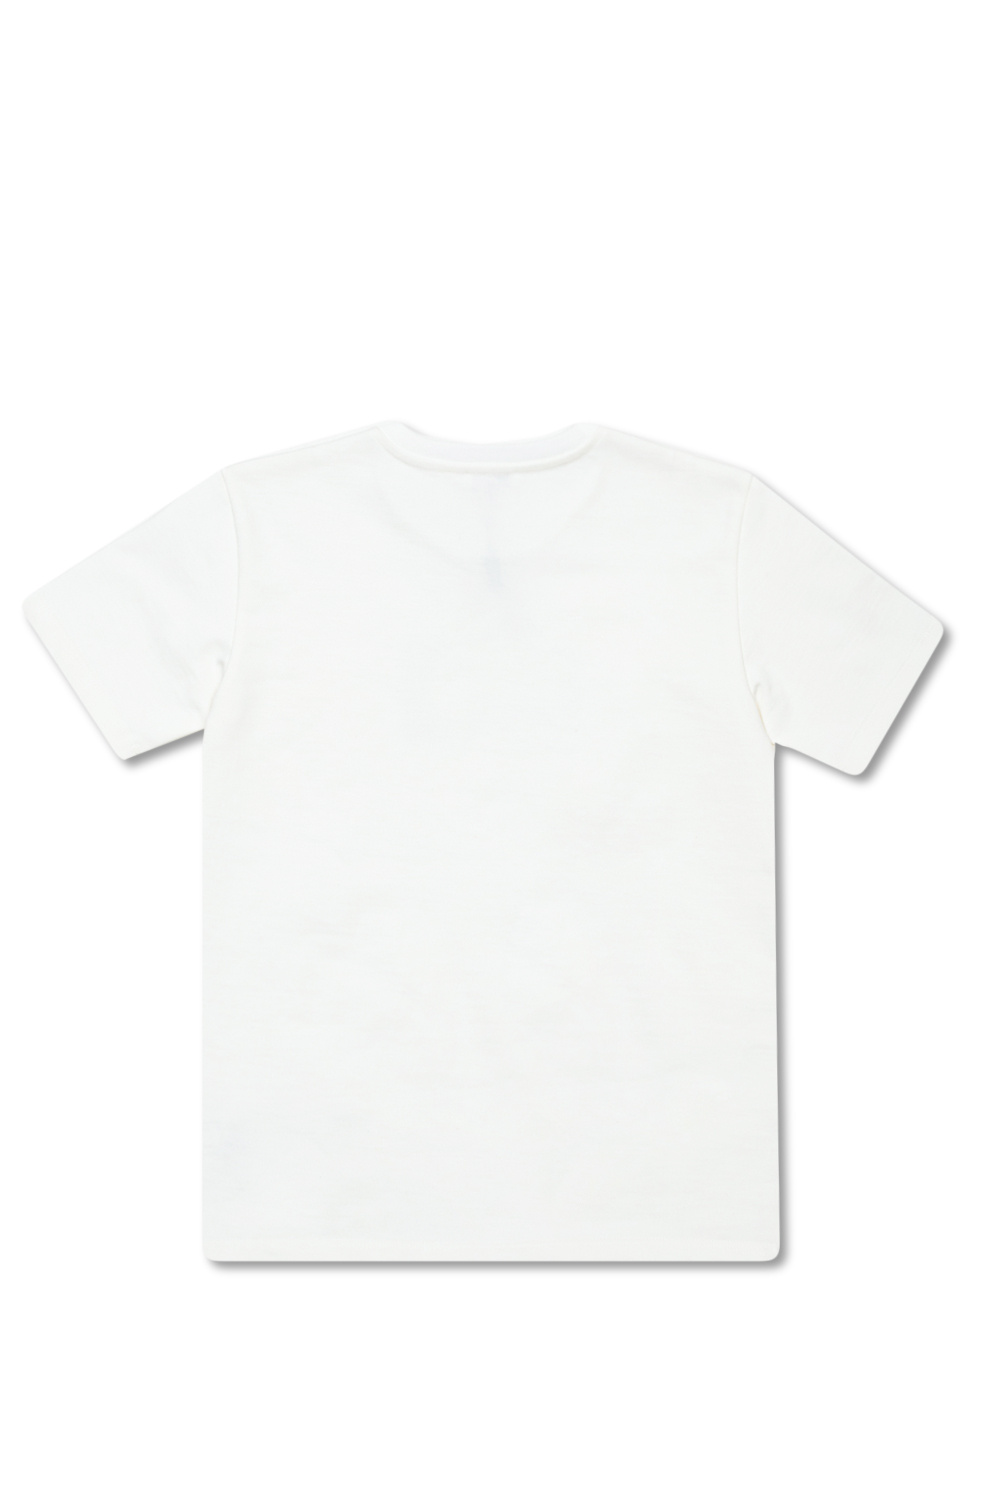 Dolce & Gabbana Kids Logo T-shirt